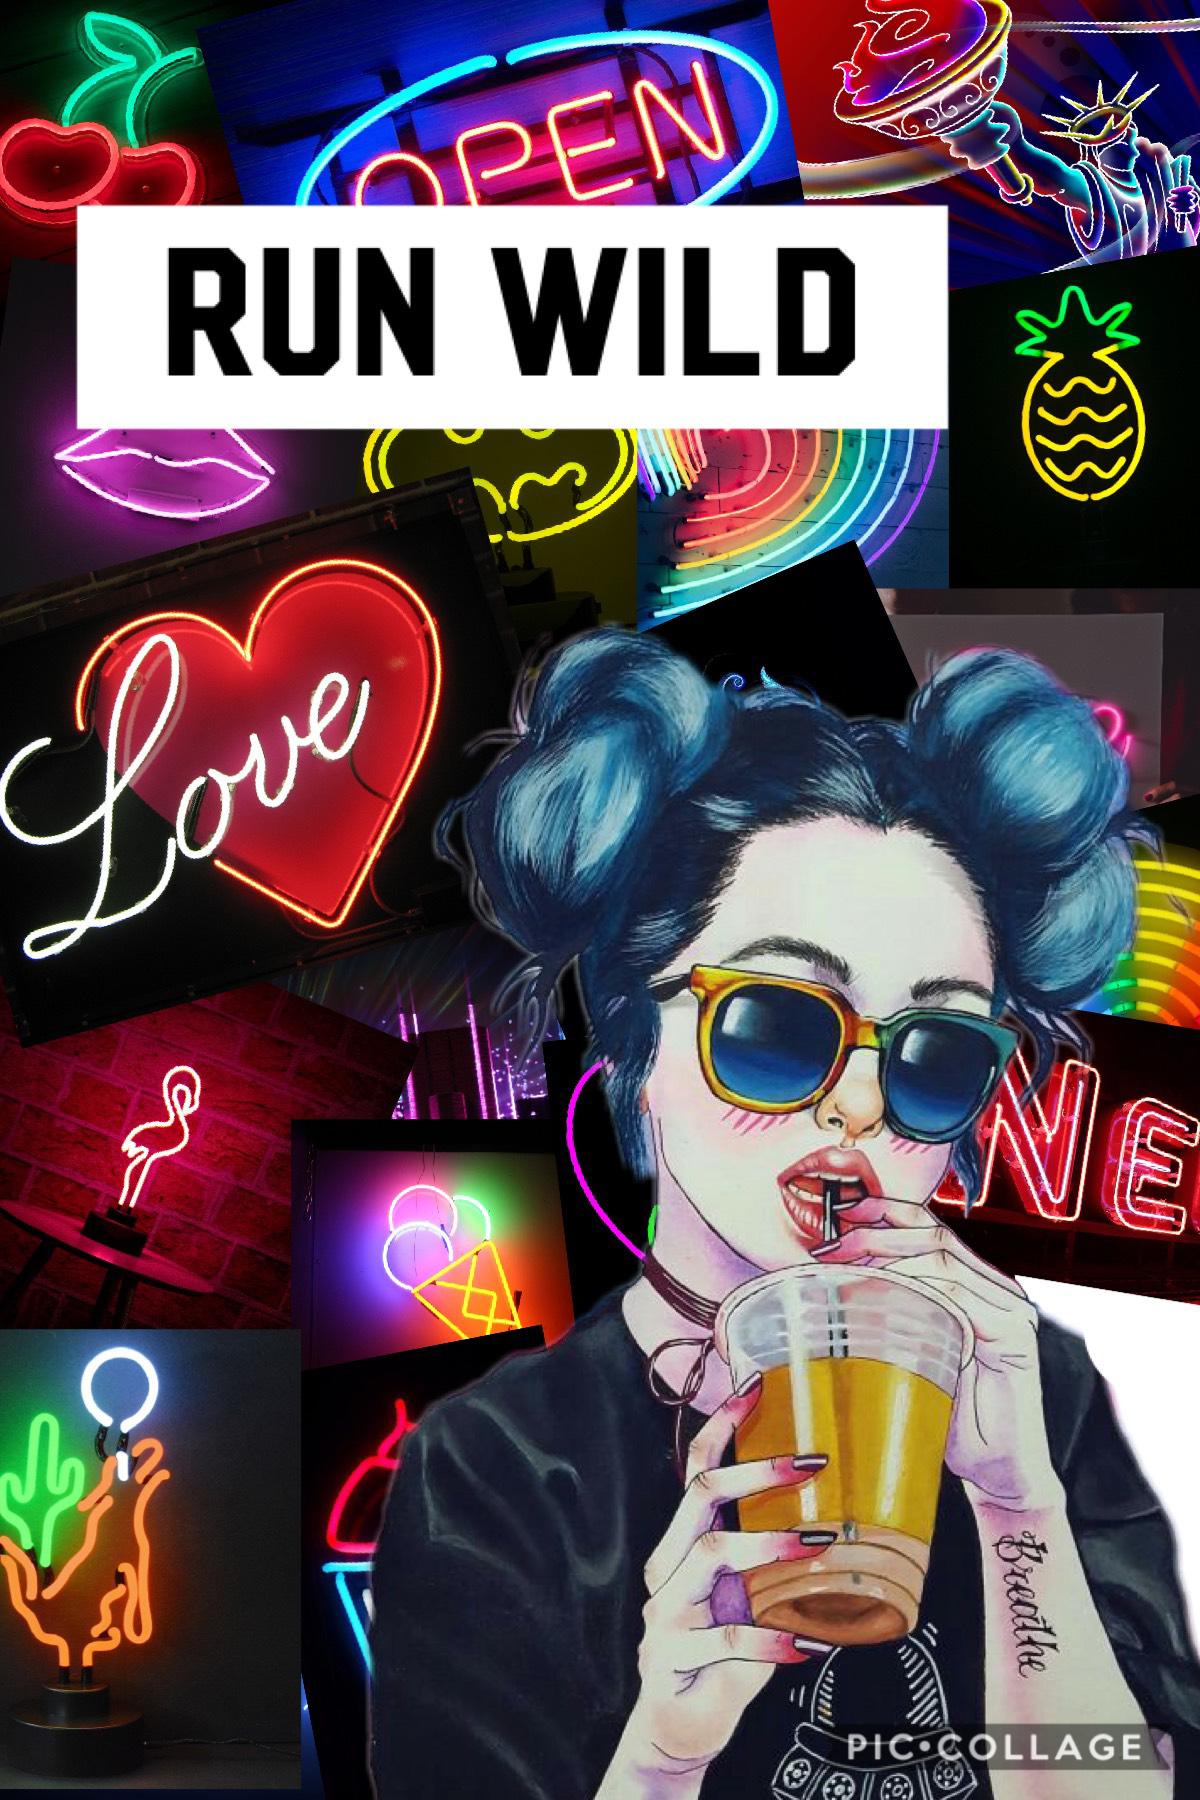 Run wild 😝